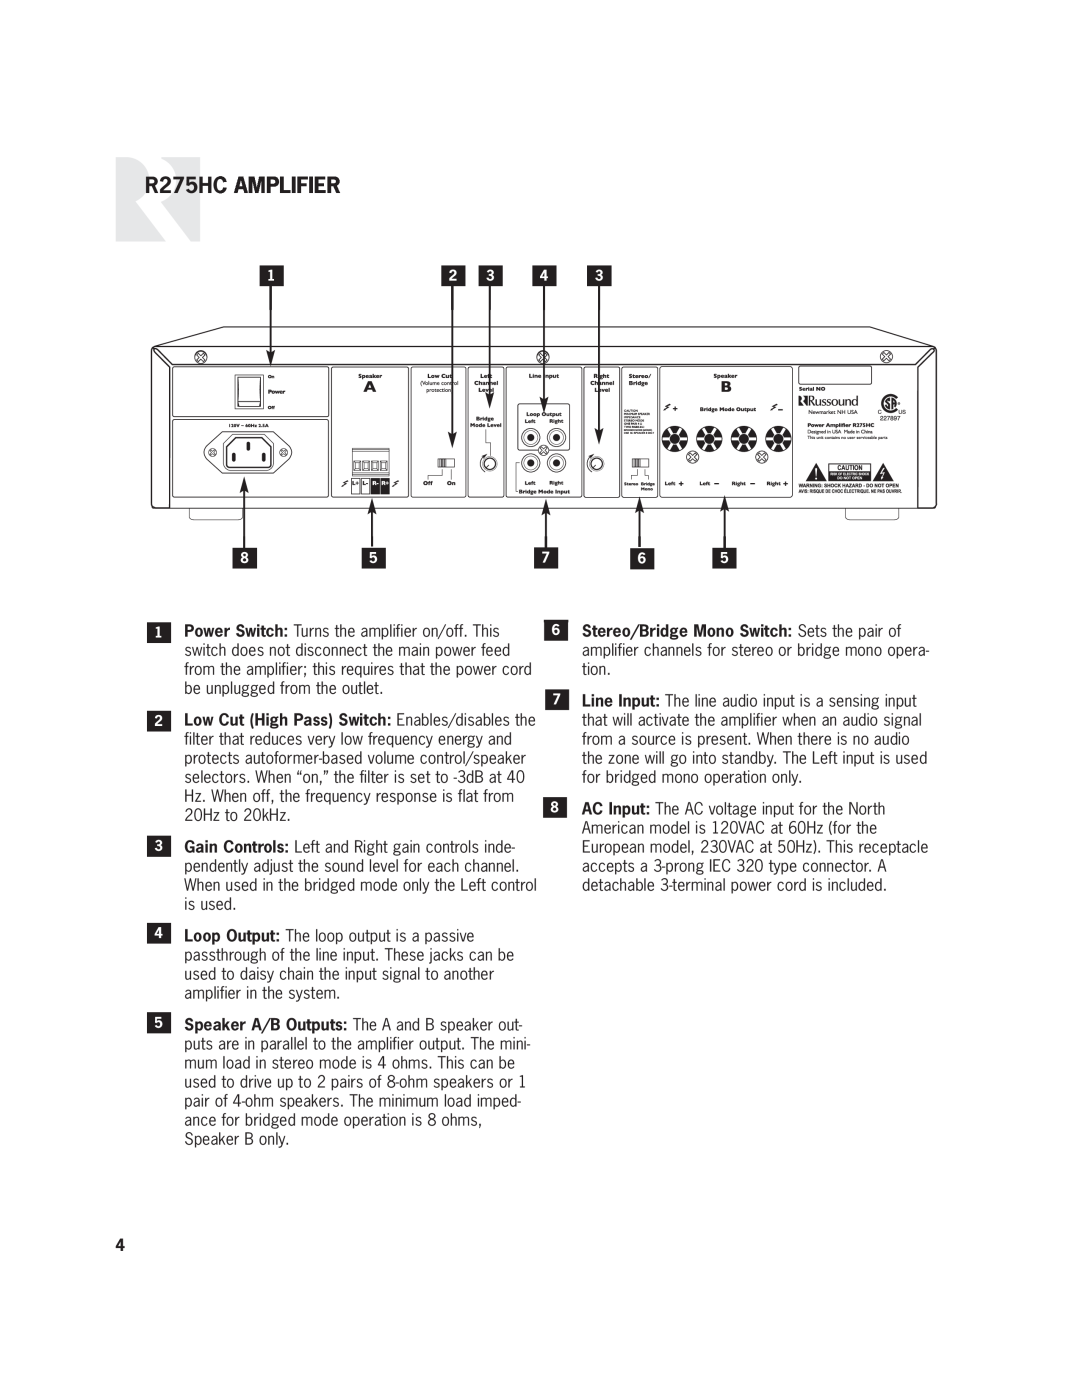 Russound user manual R275HC AMPLIFIER 